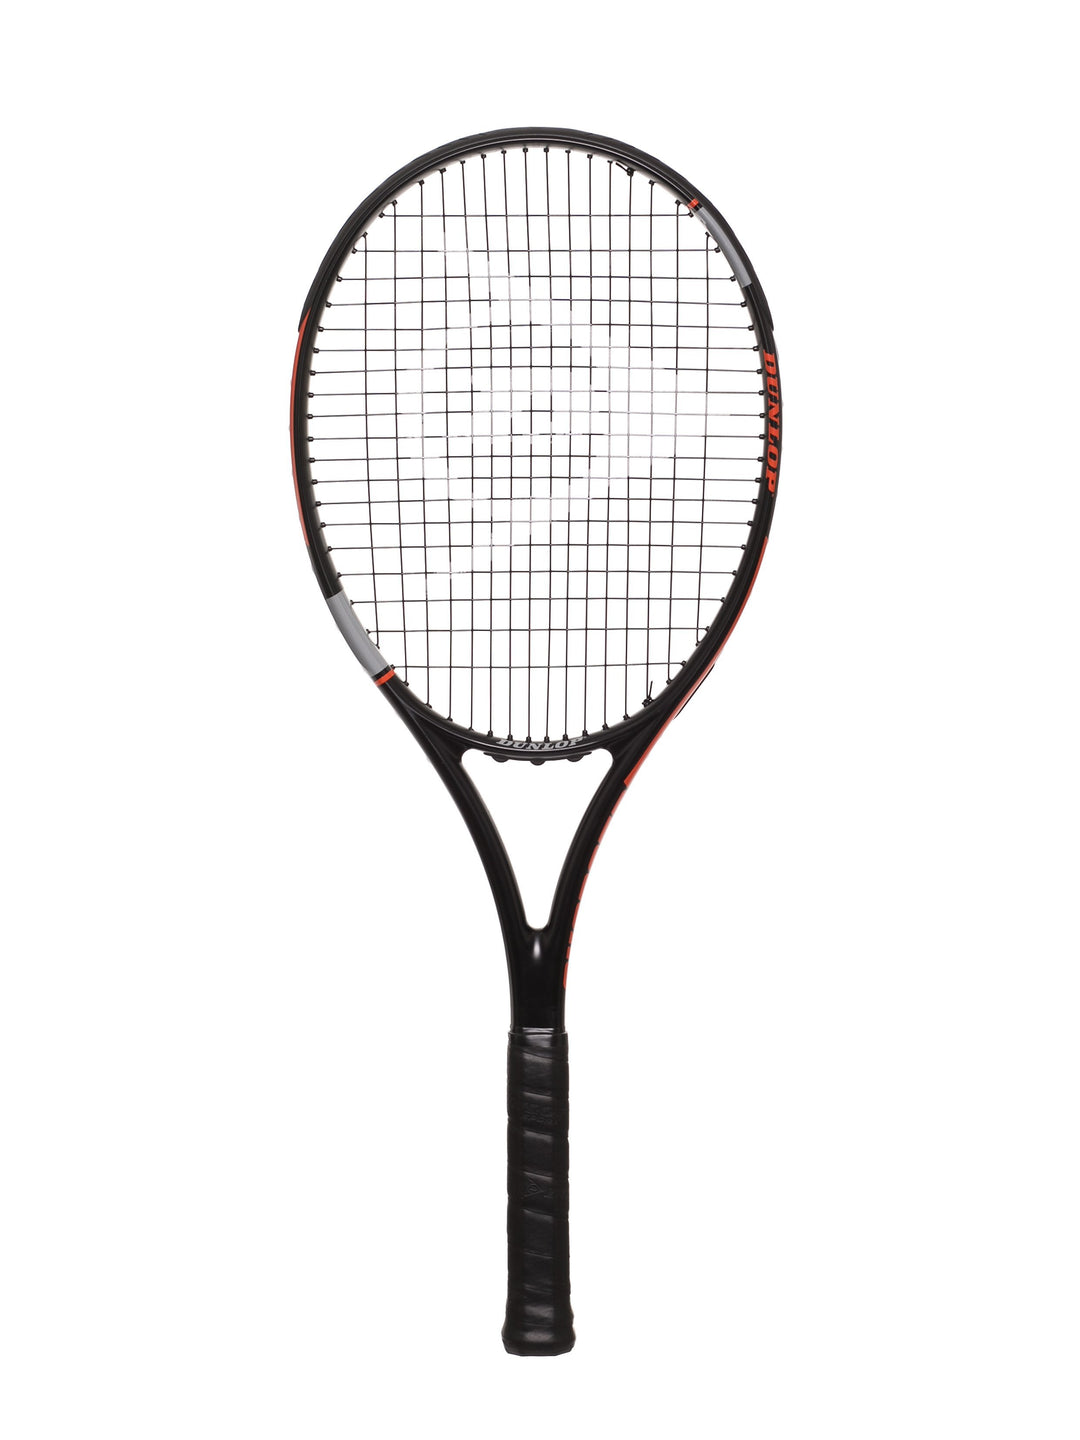 Dunlop Charged Tennis Racquet